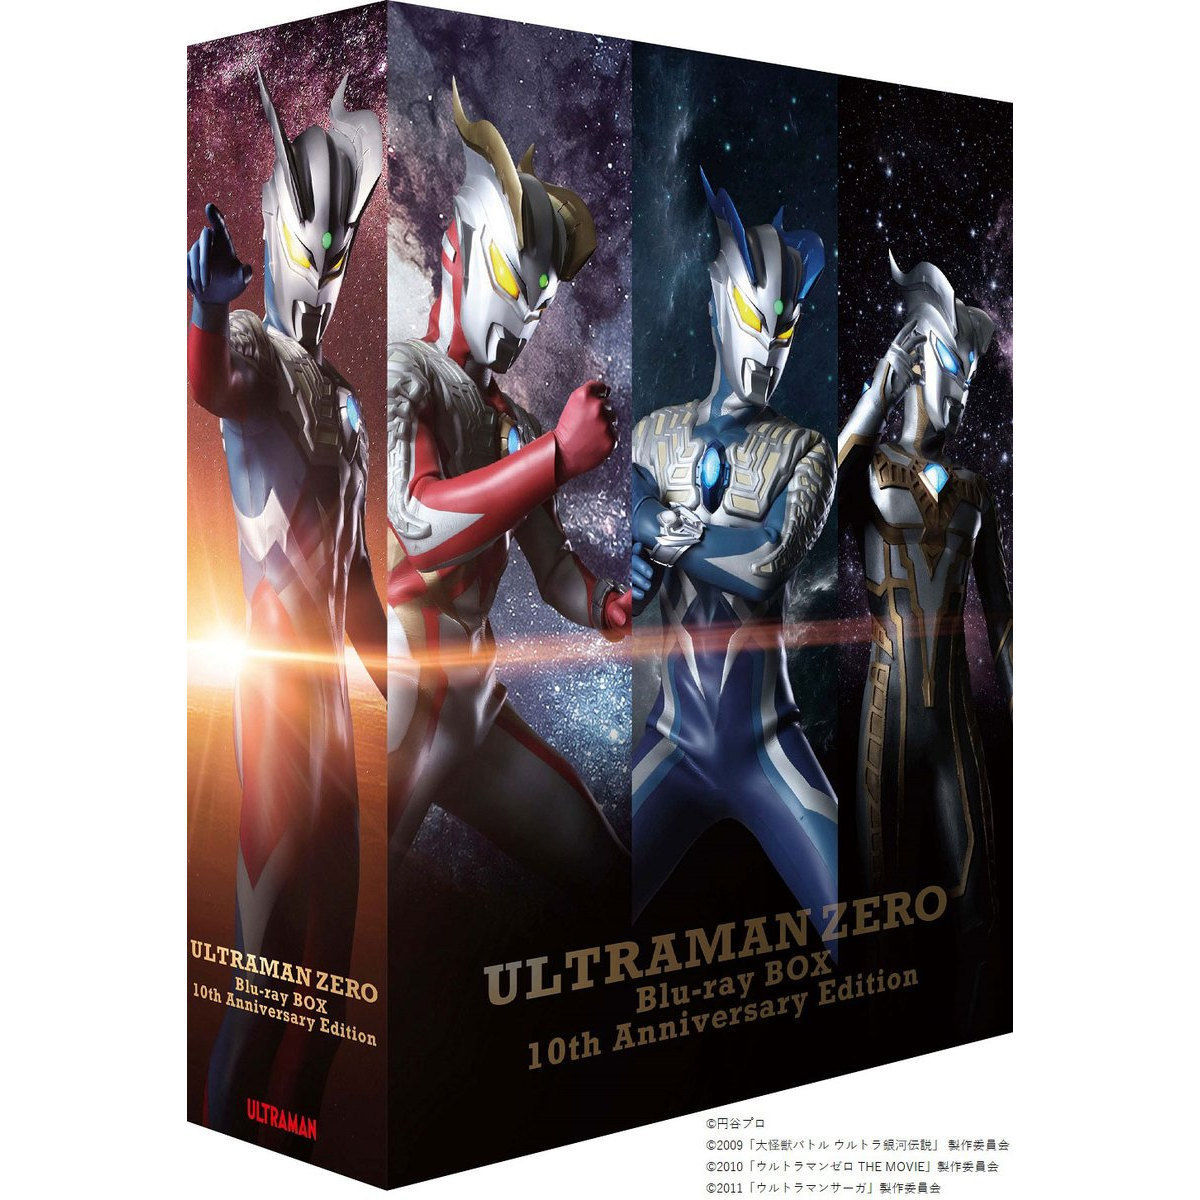 ウルトラマンゼロ Blu-ray BOX 10th Anniversary Edition [期間限定生産]